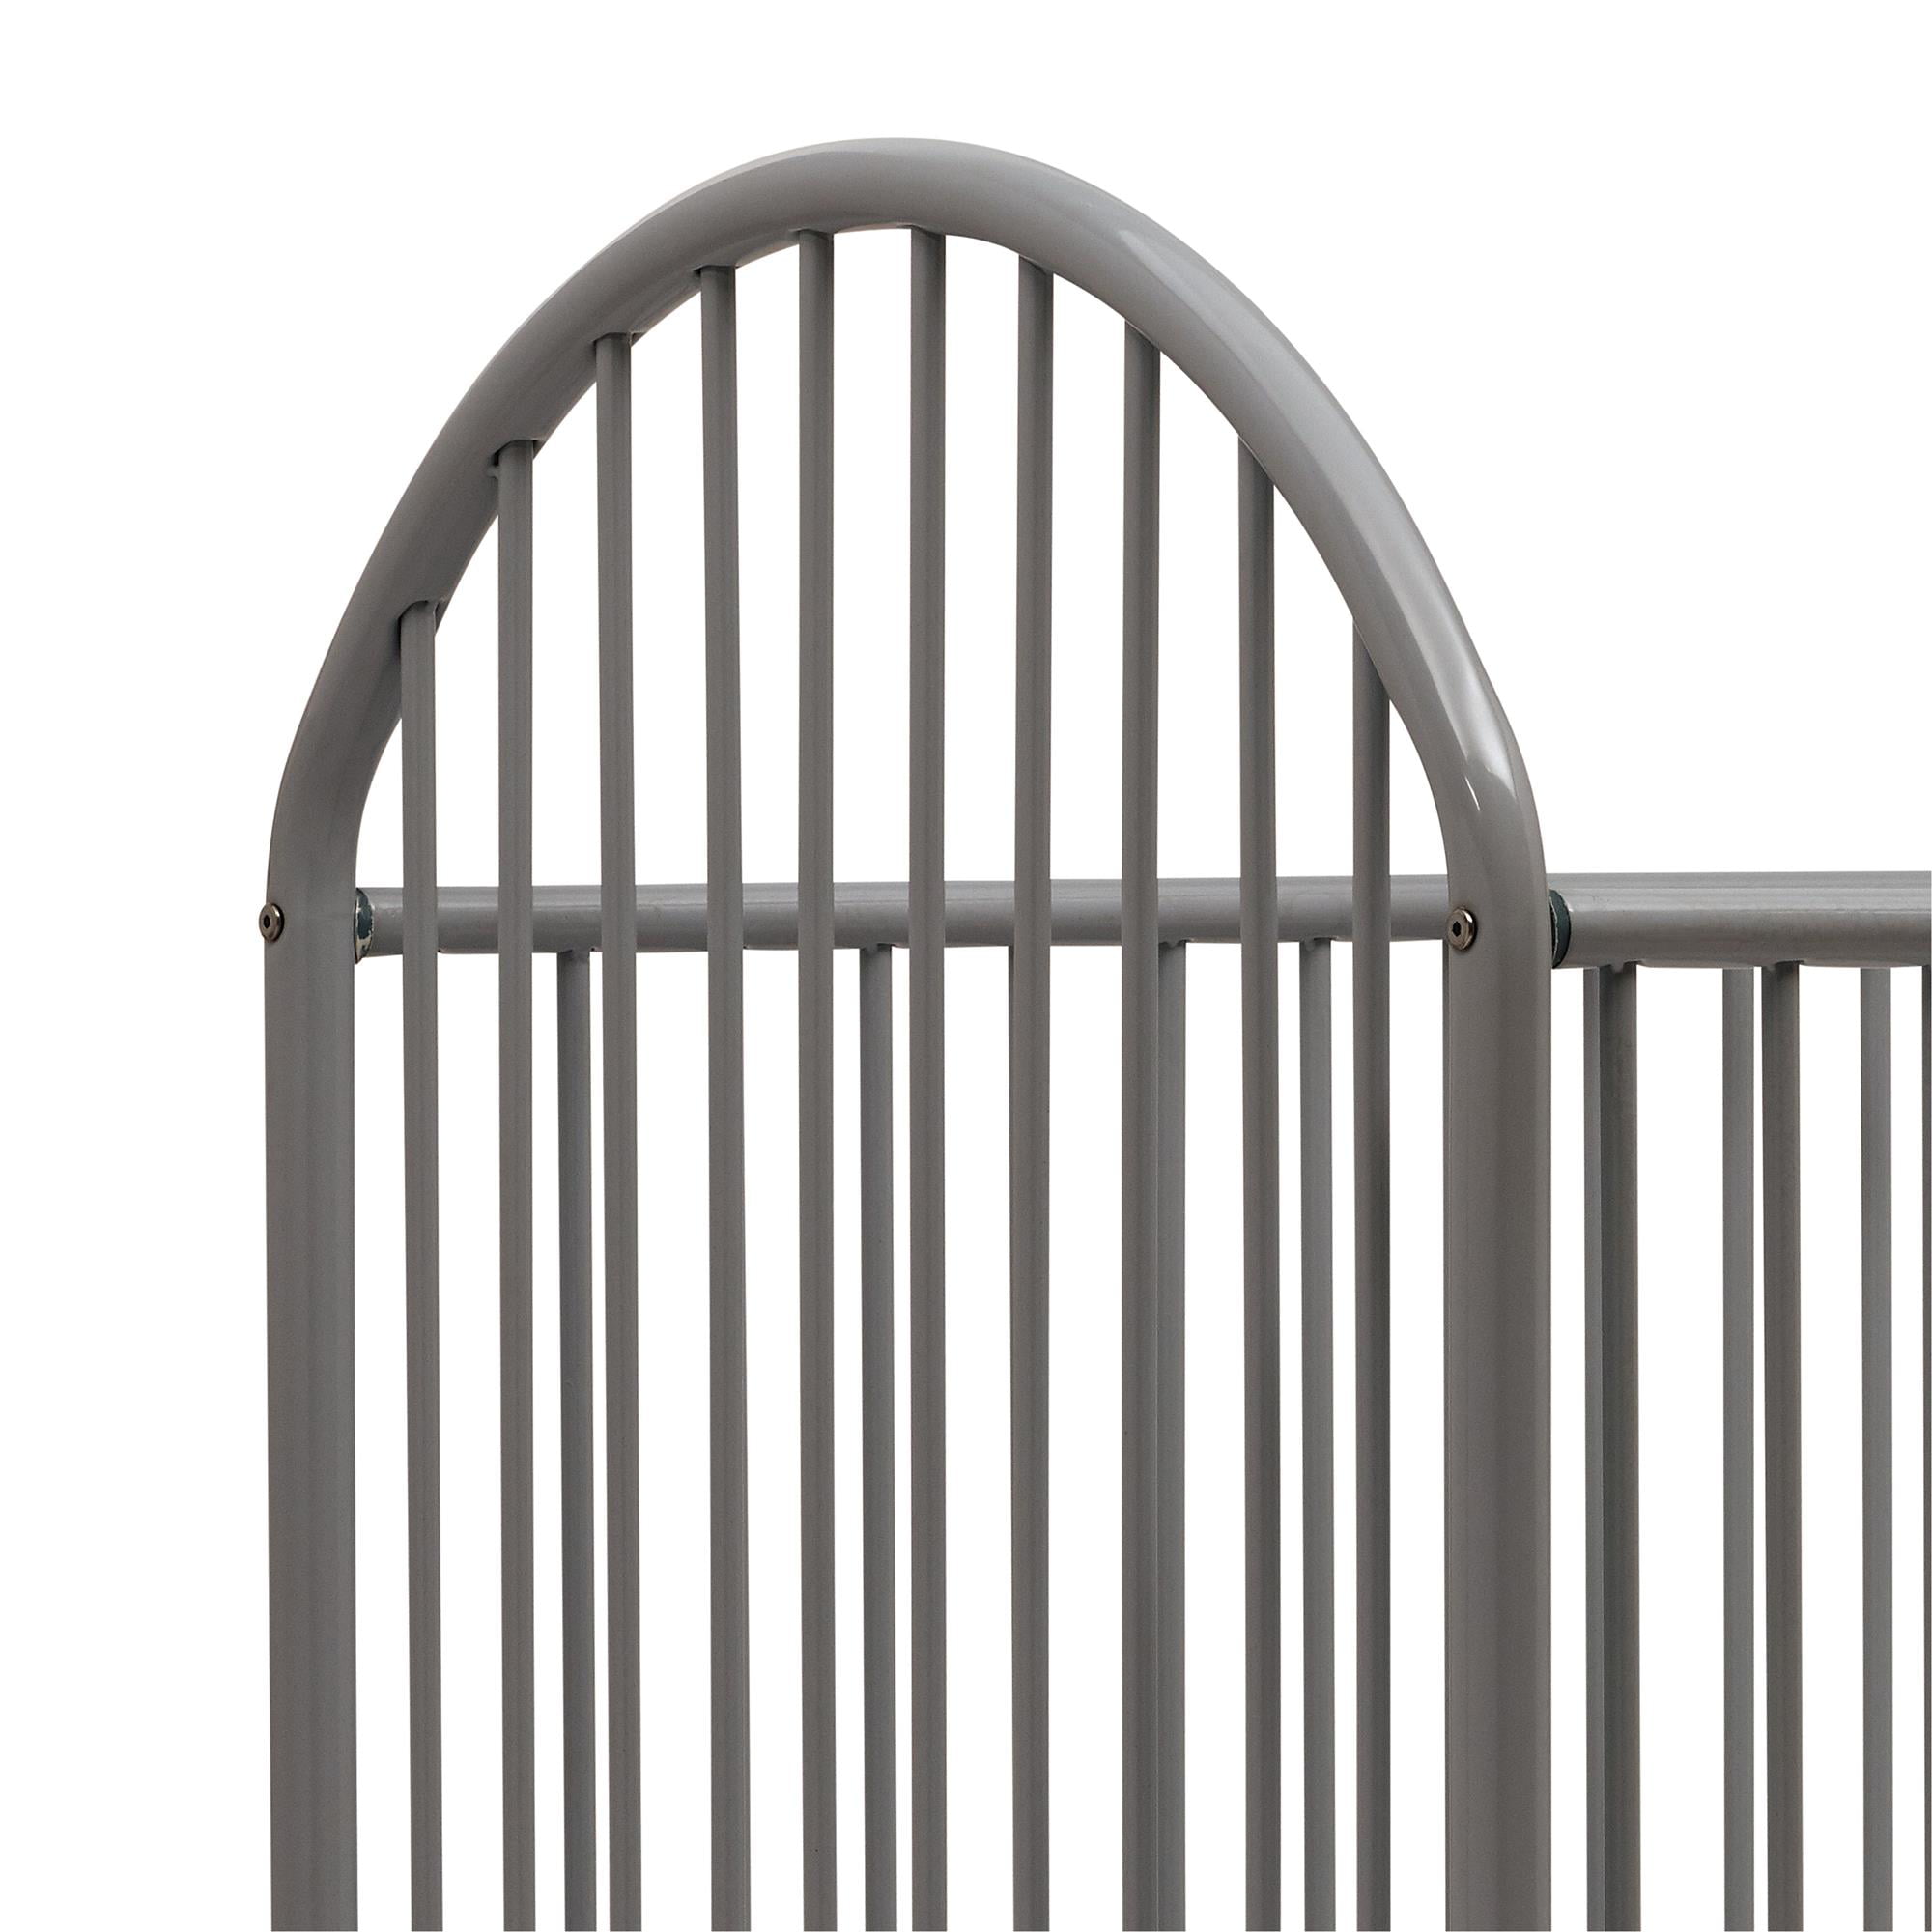 prism metal crib